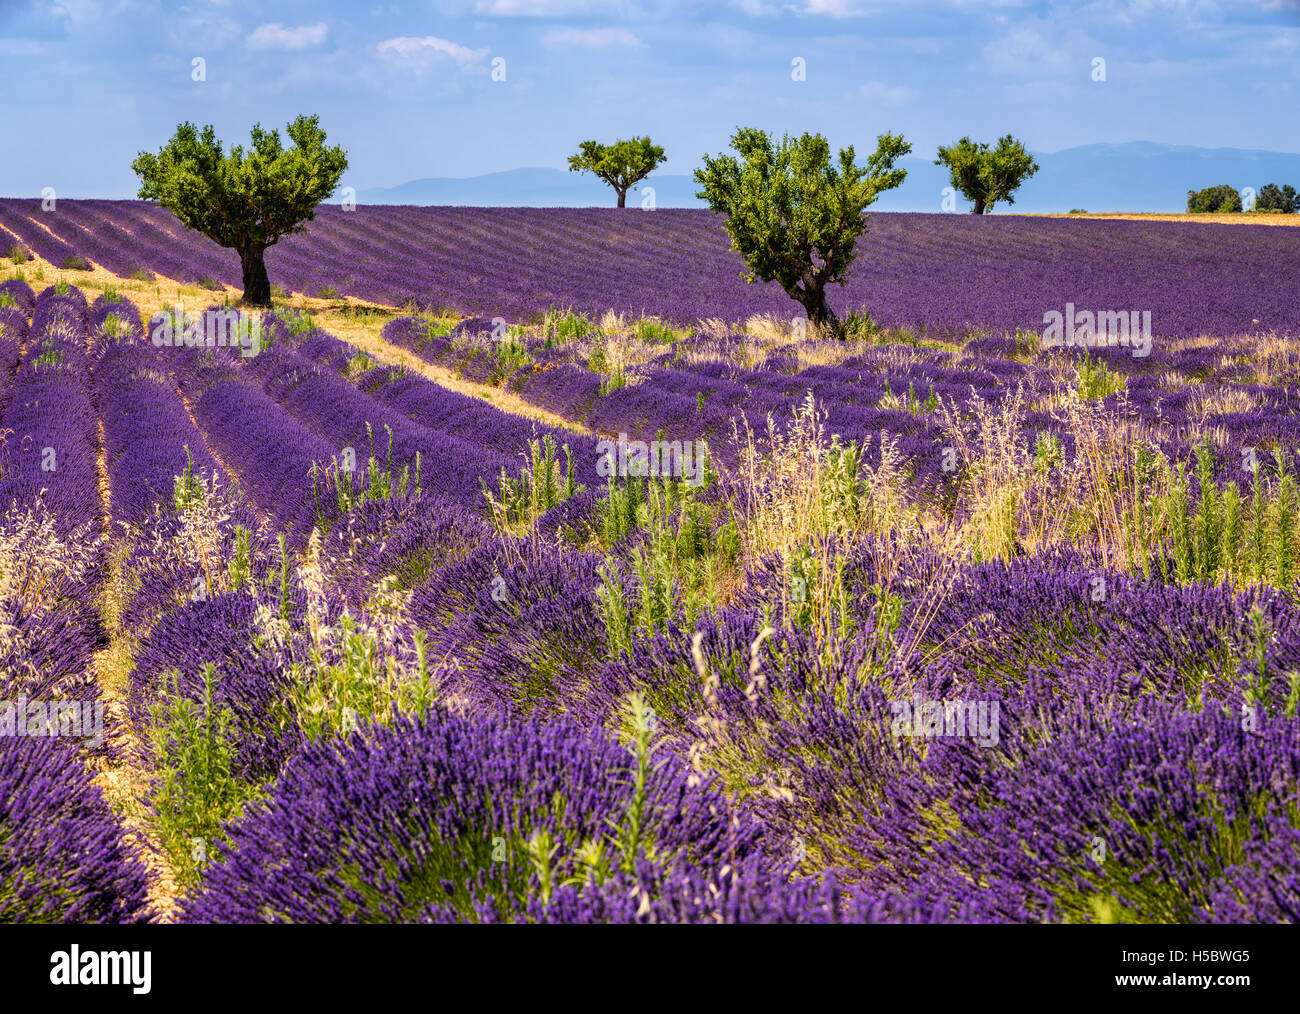 Lavendelfelder in Valensole mit Olivenbäumen. Sommer in Alpes de Hautes Provence, südlichen französischen Alpen, Frankreich Stockfoto